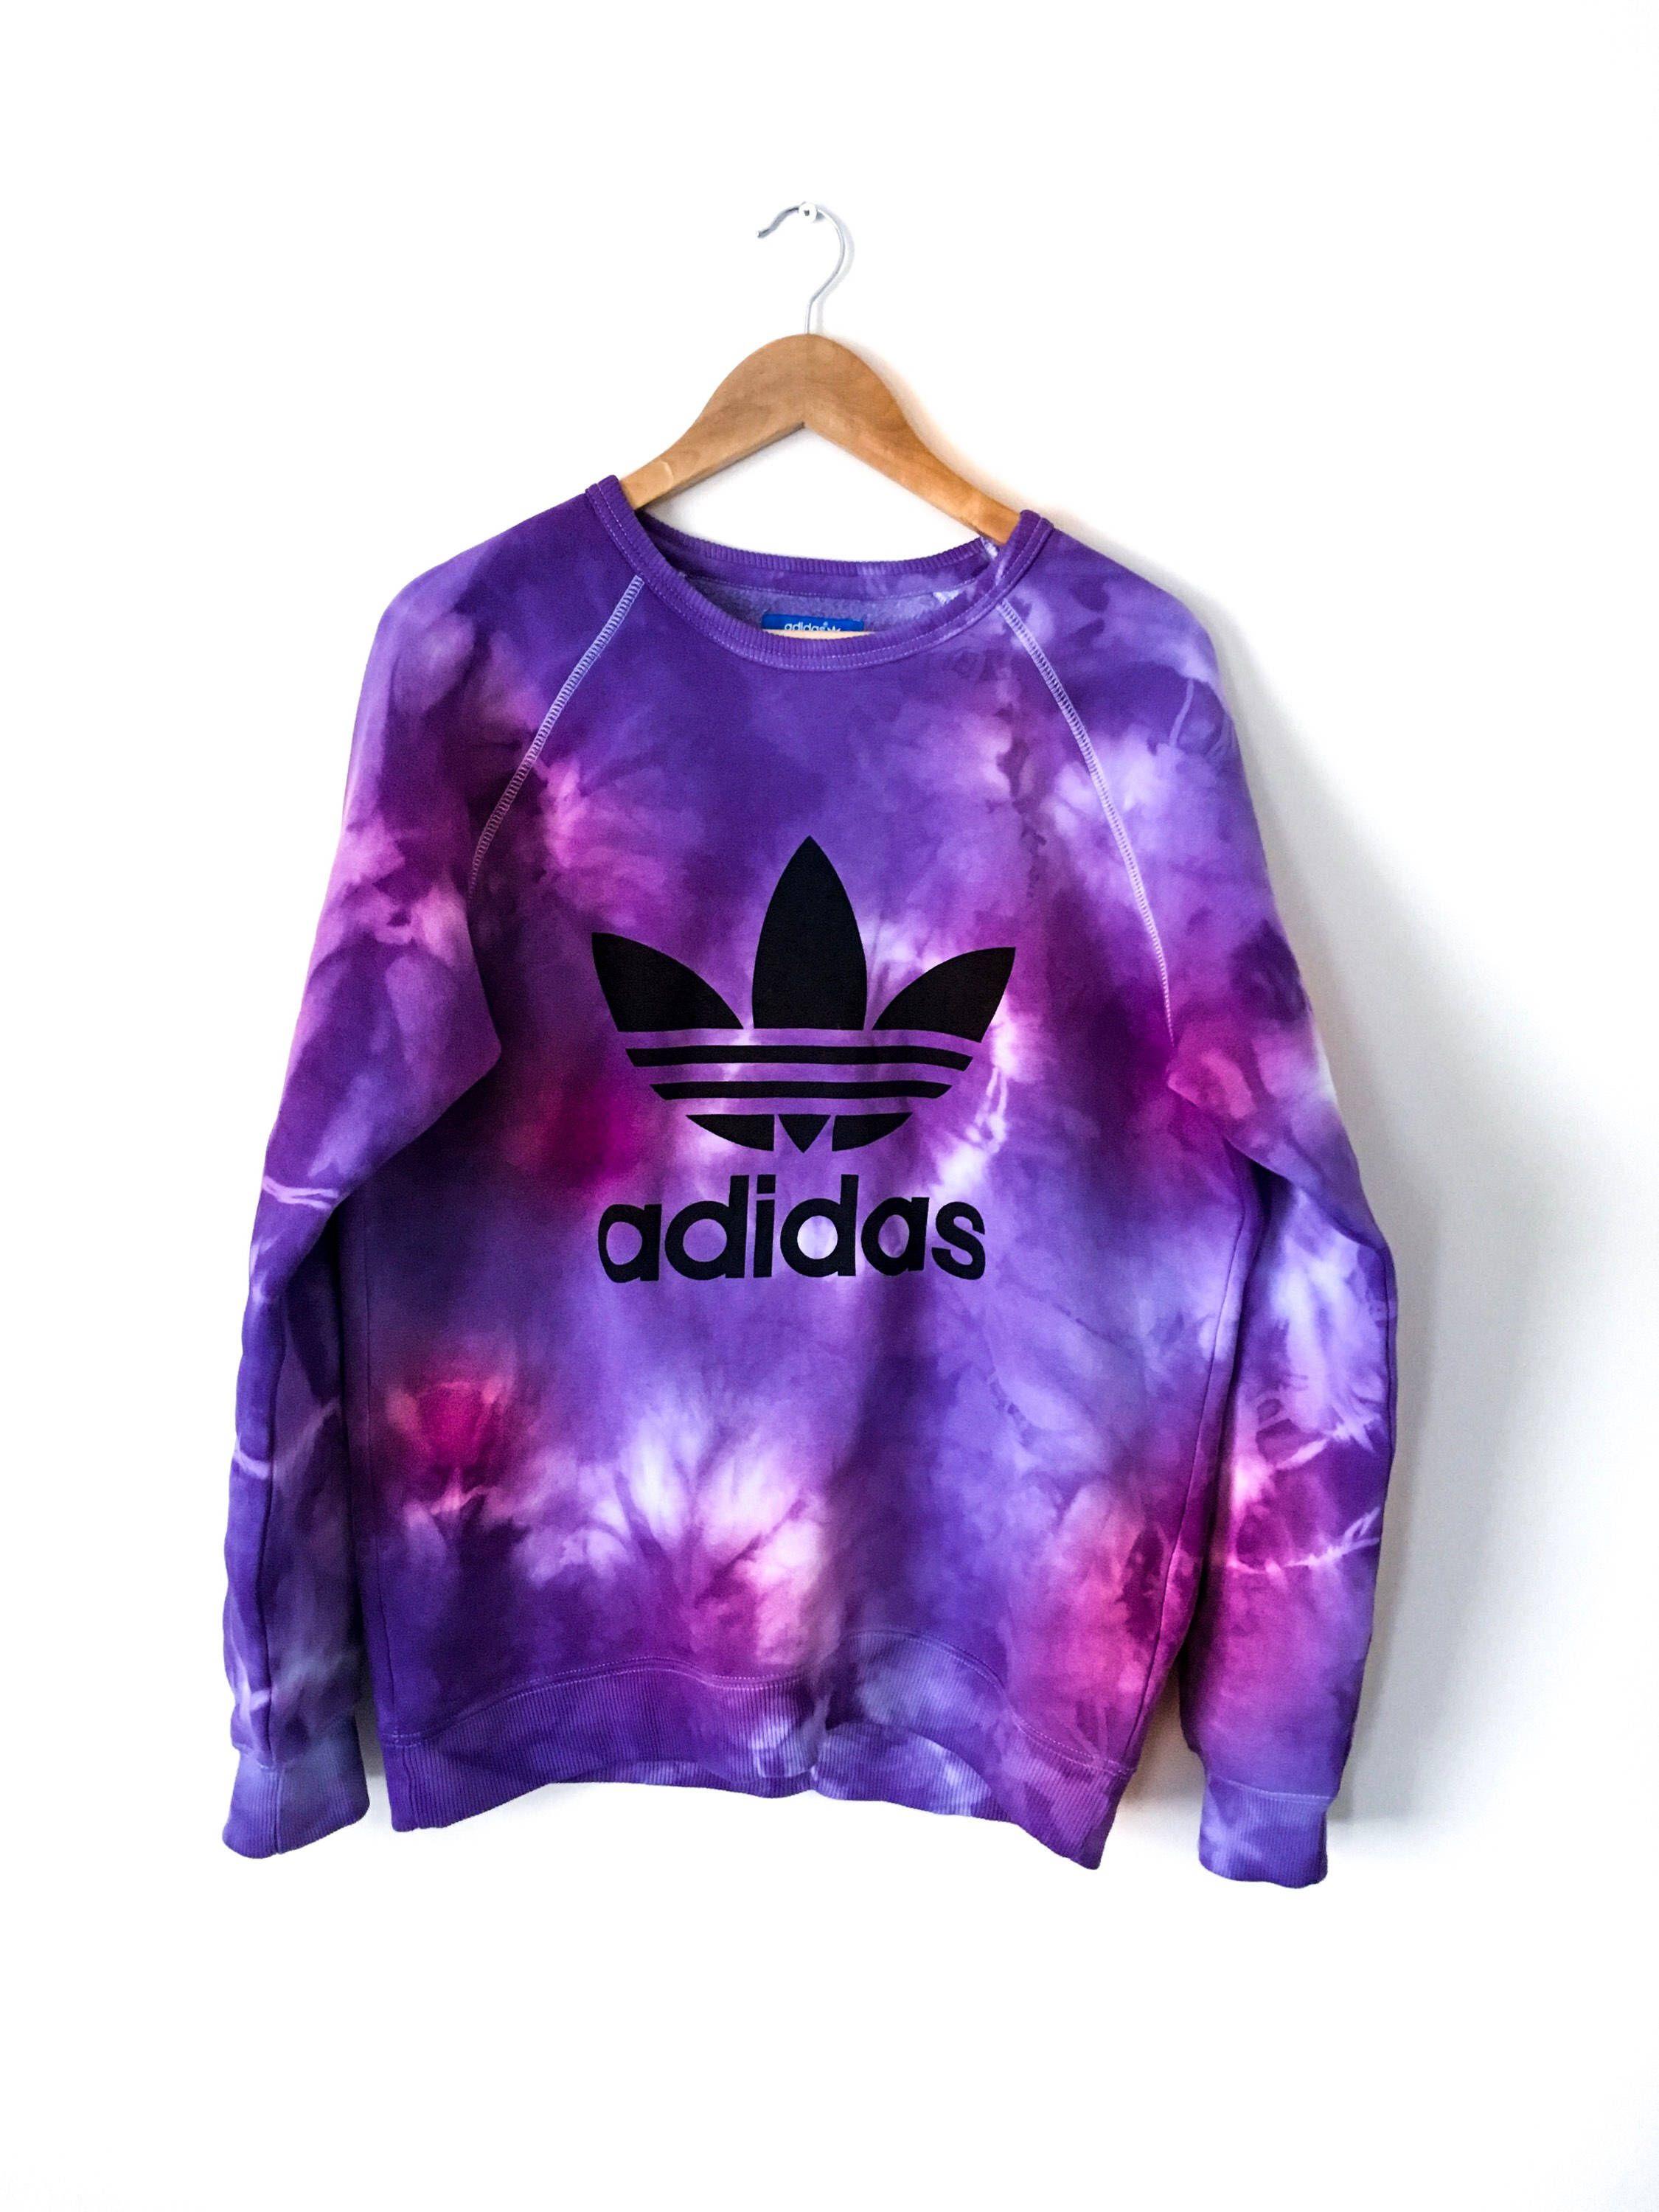 Adidas Tie Dye Logo - Adidas tie dye sweatshirt | Grunge, purple, pink, tie dye, tie dye ...